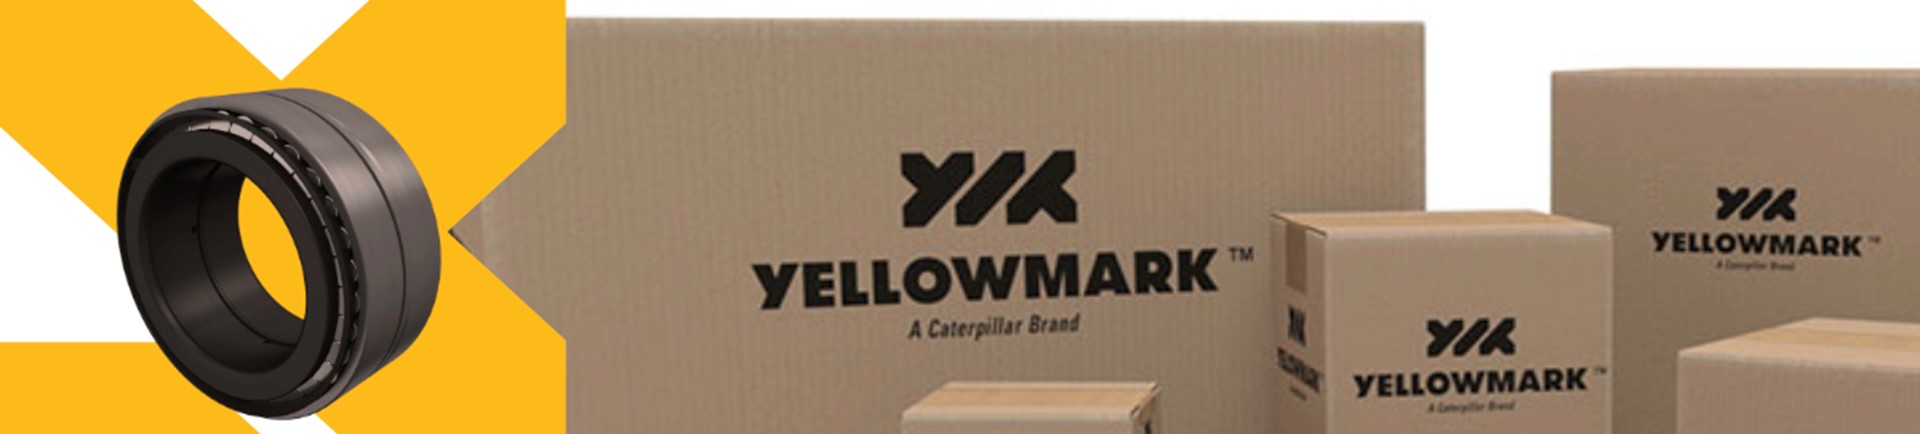 Yellowmark™